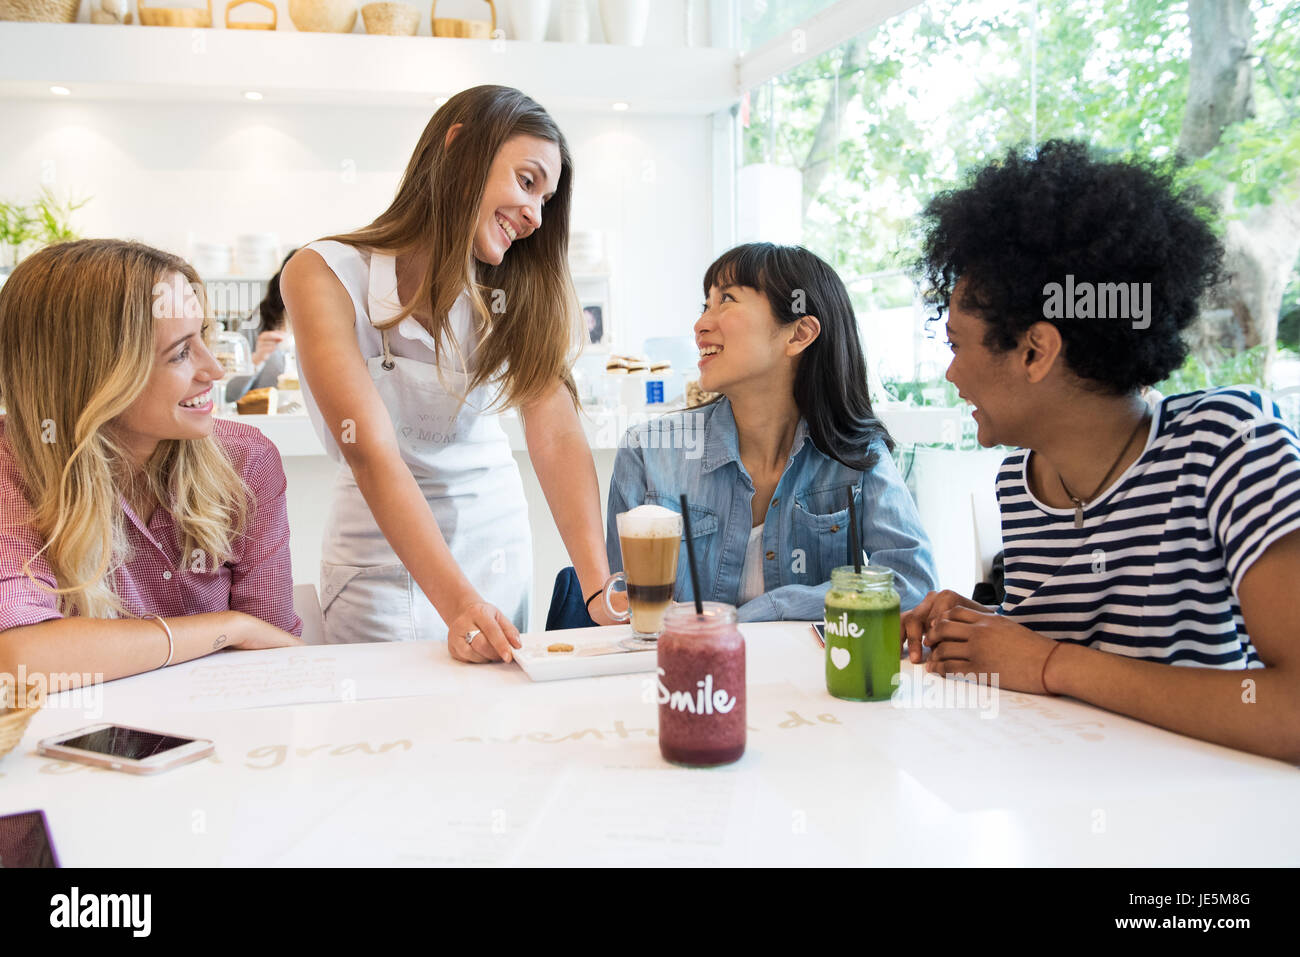 Kellnerin serviert Drinks zu Gruppe von Frauen im café Stockfoto